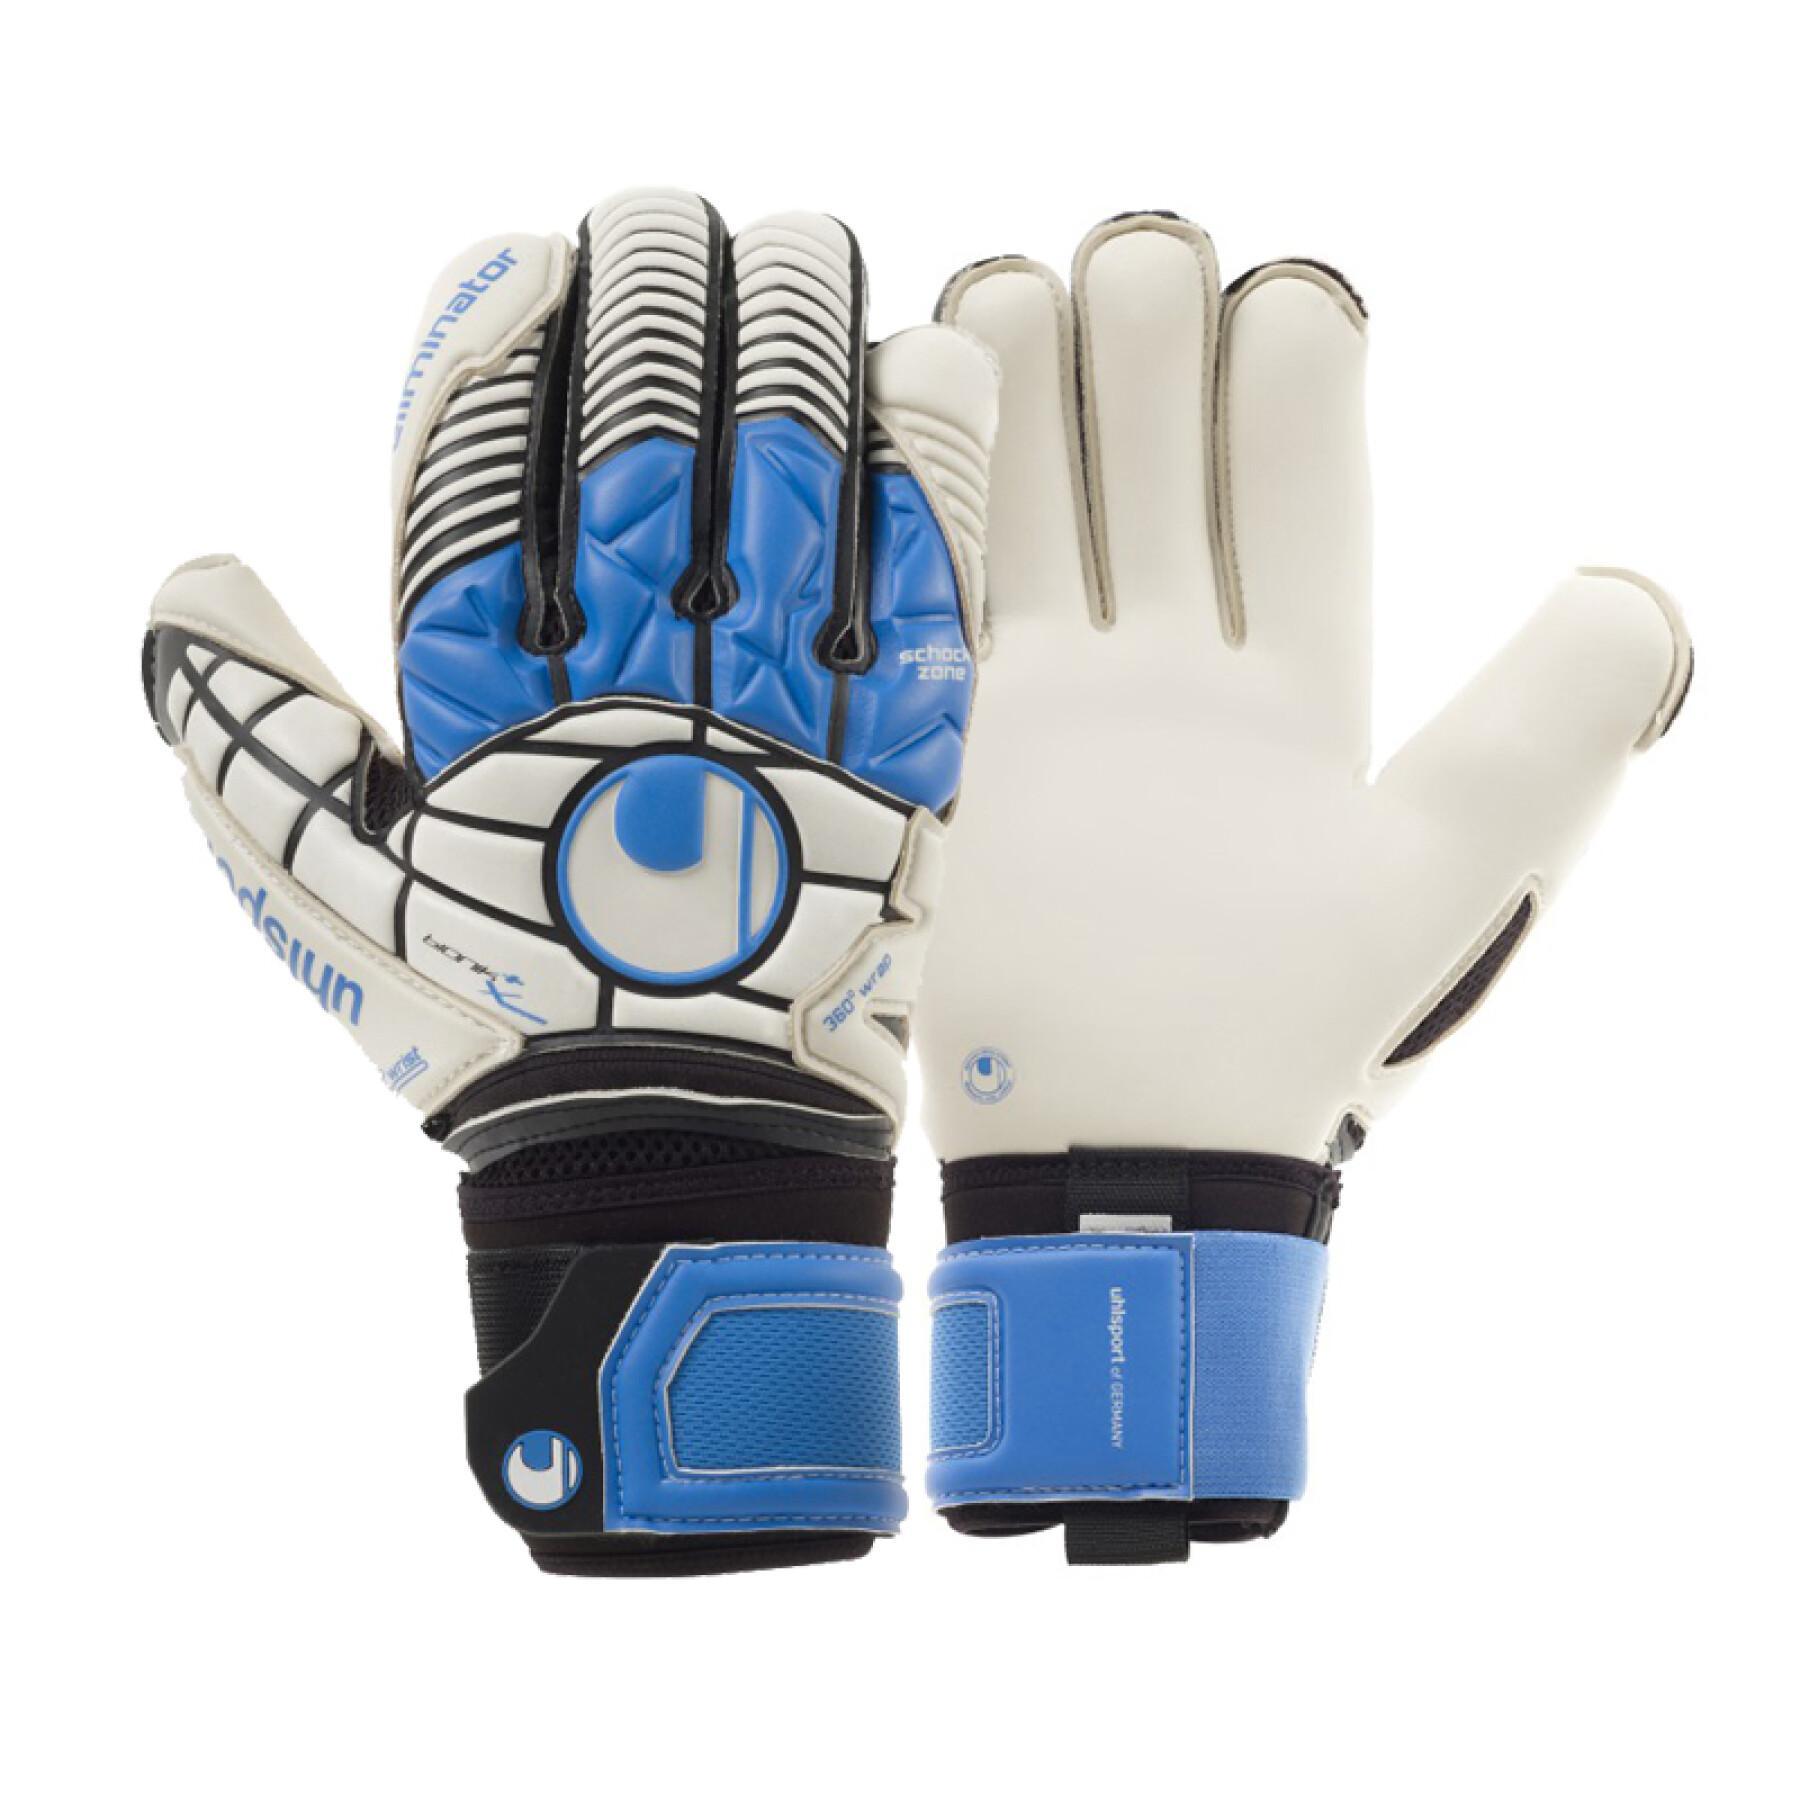 Goalkeeper gloves Uhlsport Eliminator AG Bionik+ X-Change